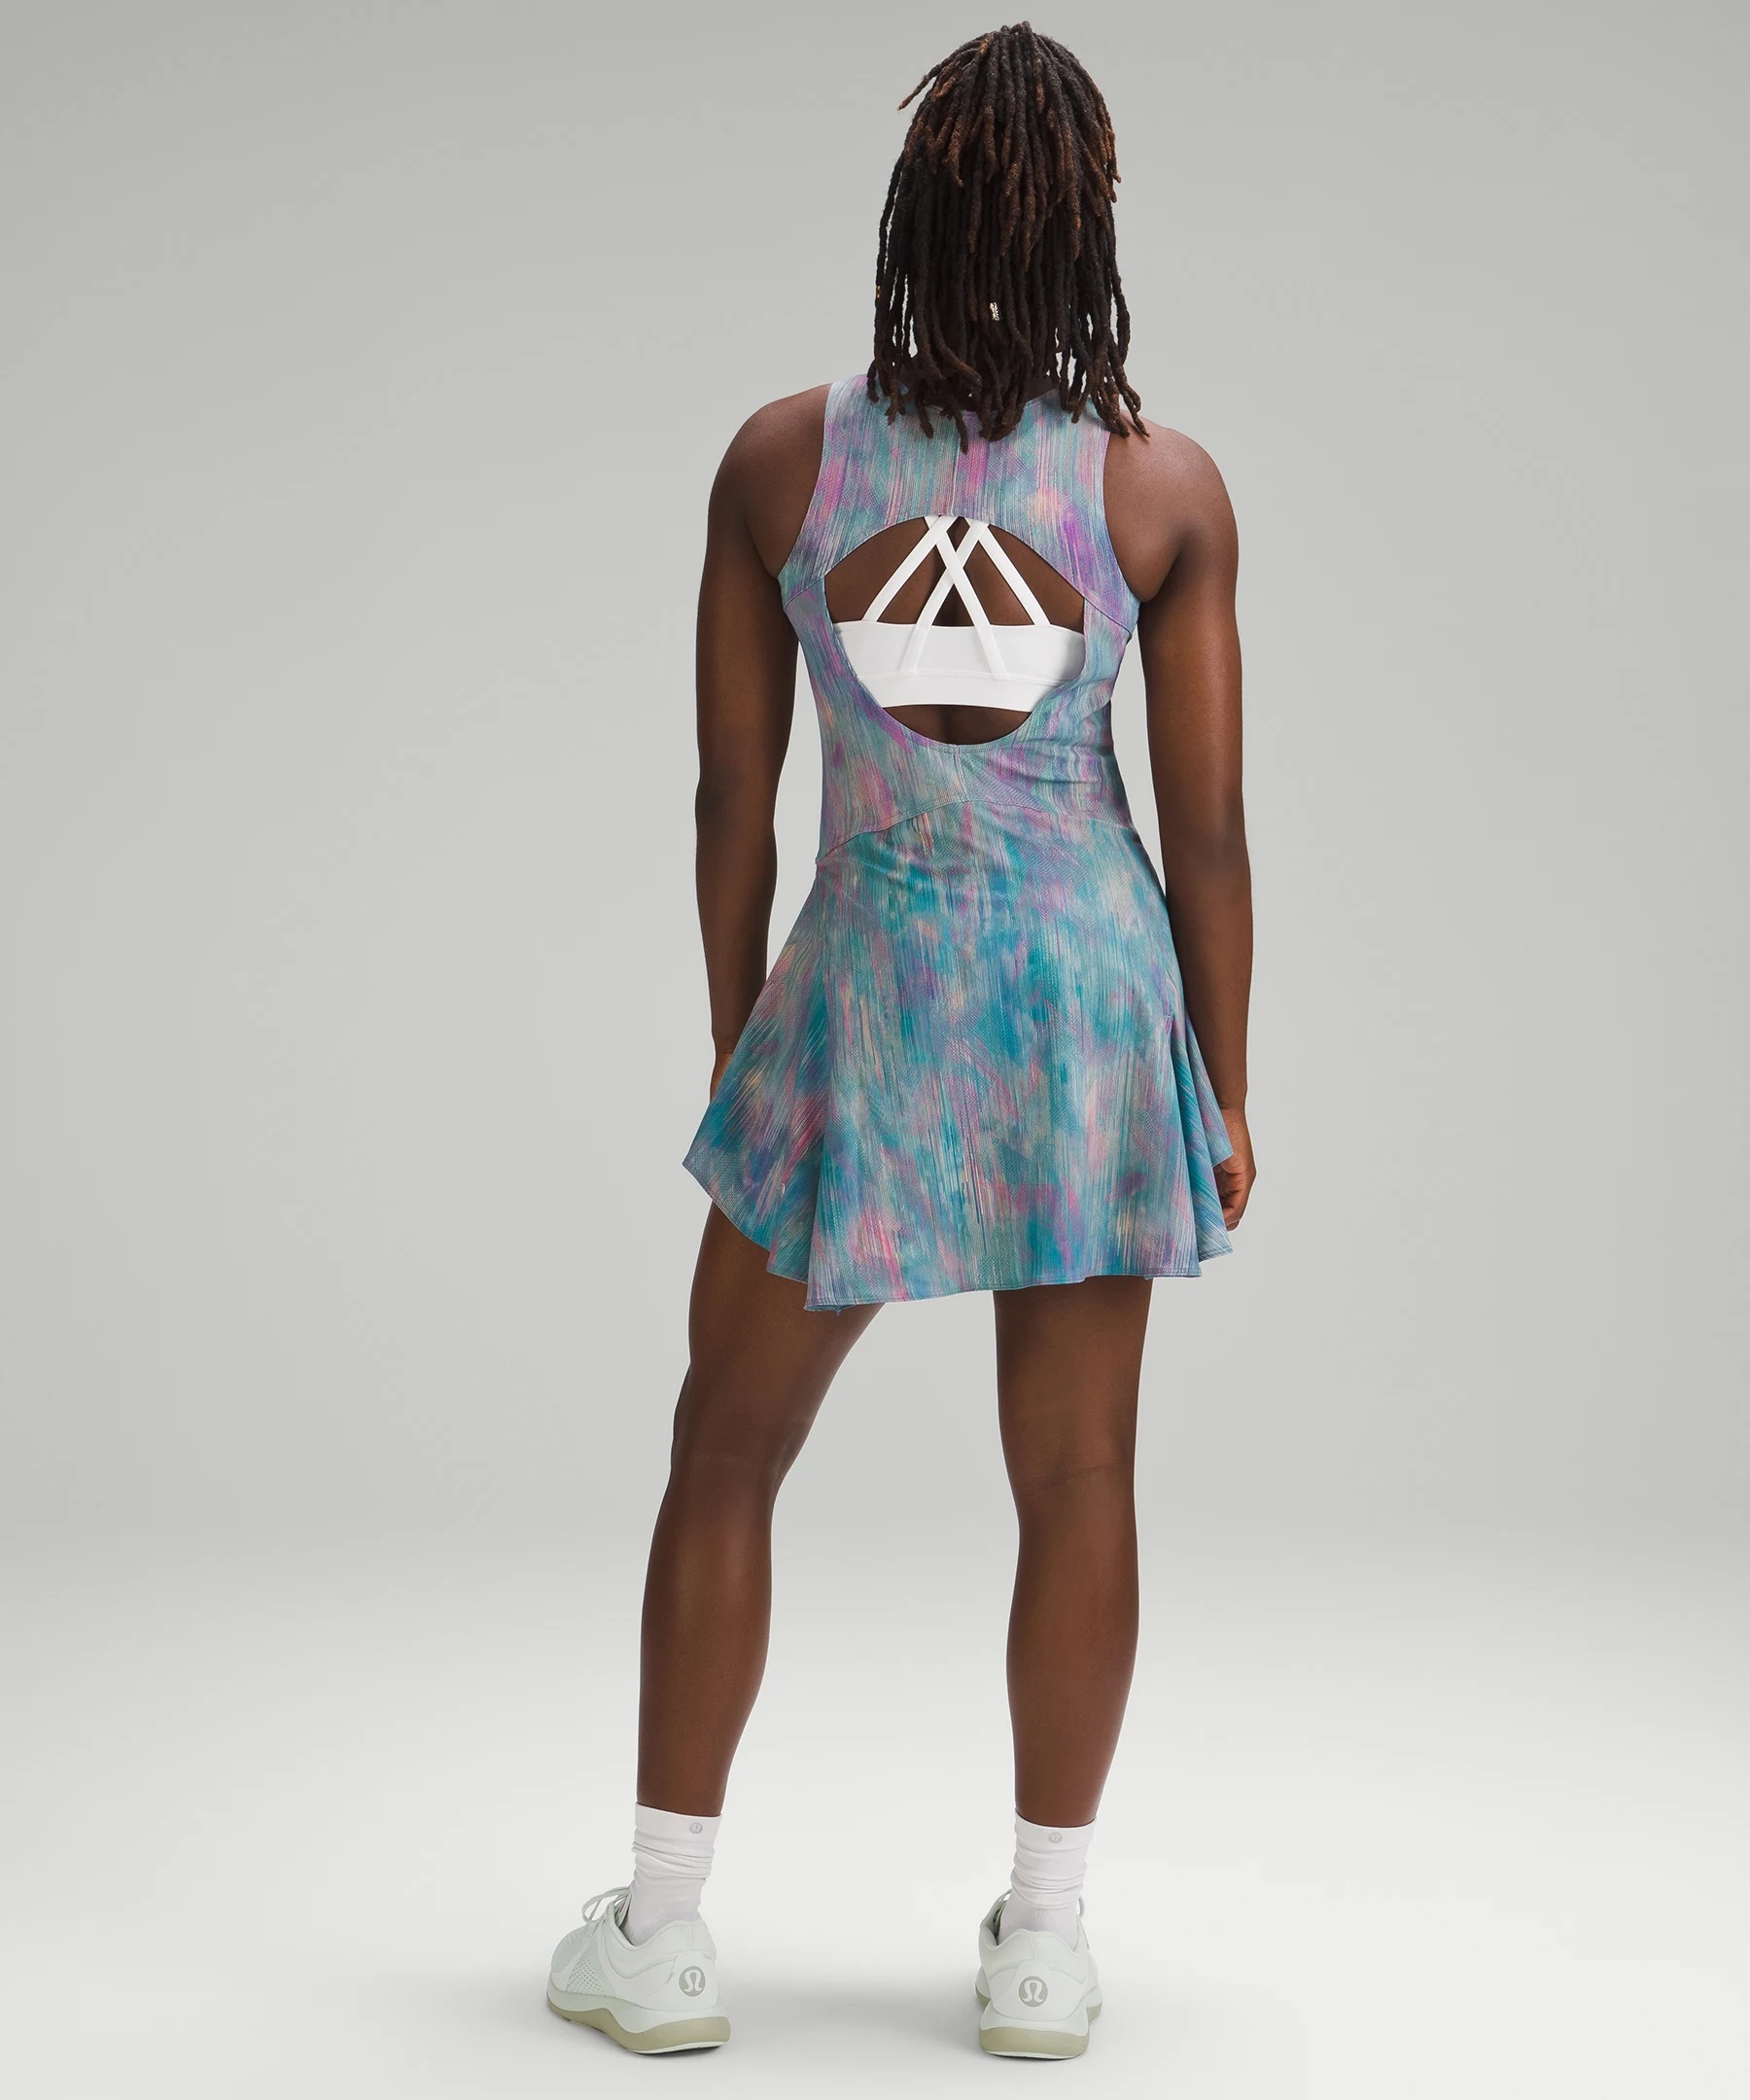 Everlux Short-Lined Tennis Tank Top Dress 6" - 2